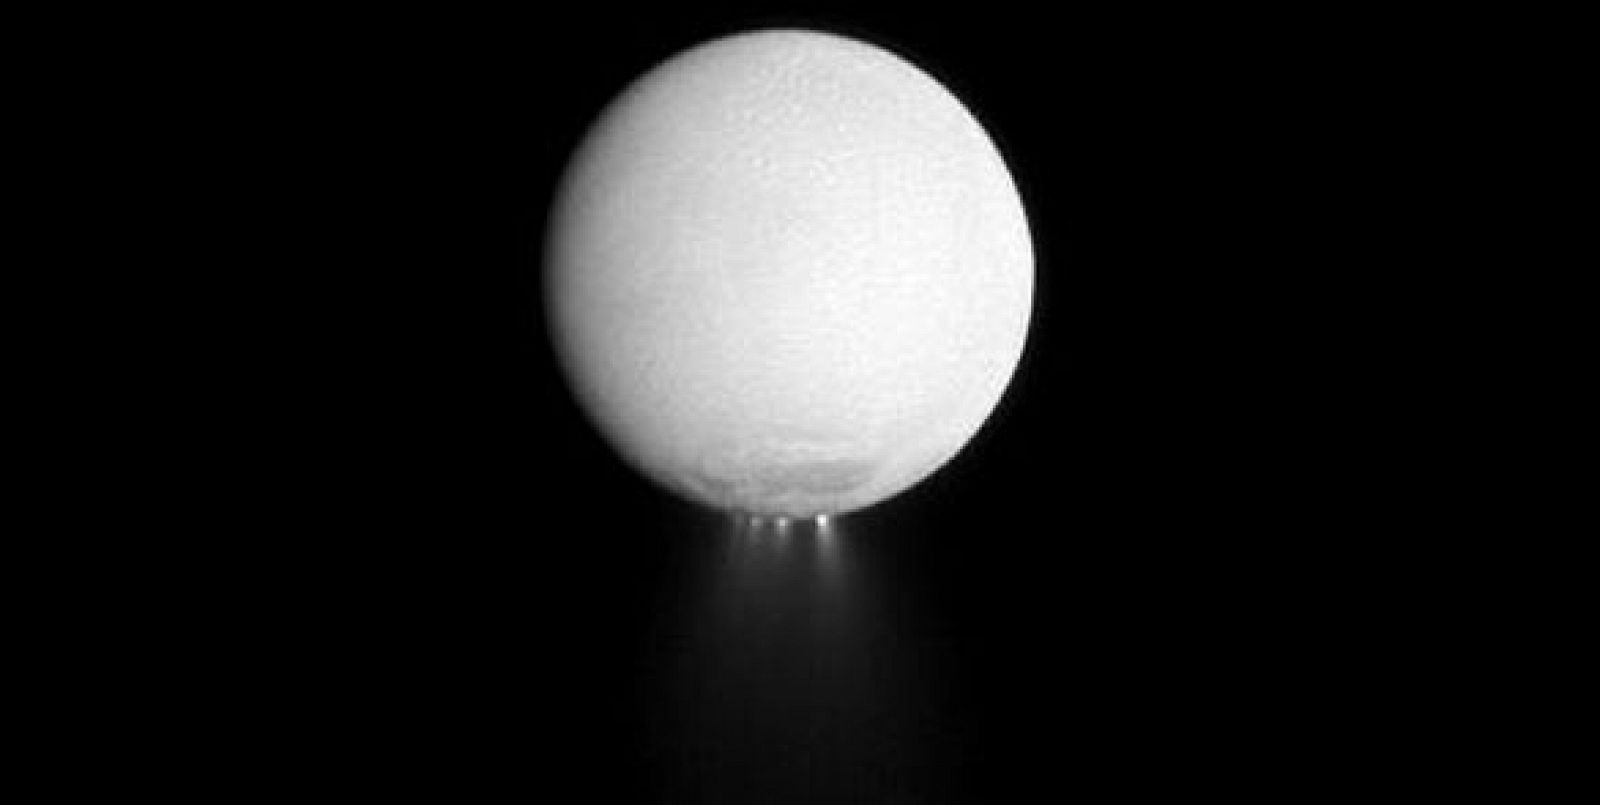 Encélado, una de las lunas de Saturnas, parece ir a propulsión en esta imagen captada por la sonda Cassini. Todo es por la iluminación del penacho de hielo que se desprende de su polo sur.